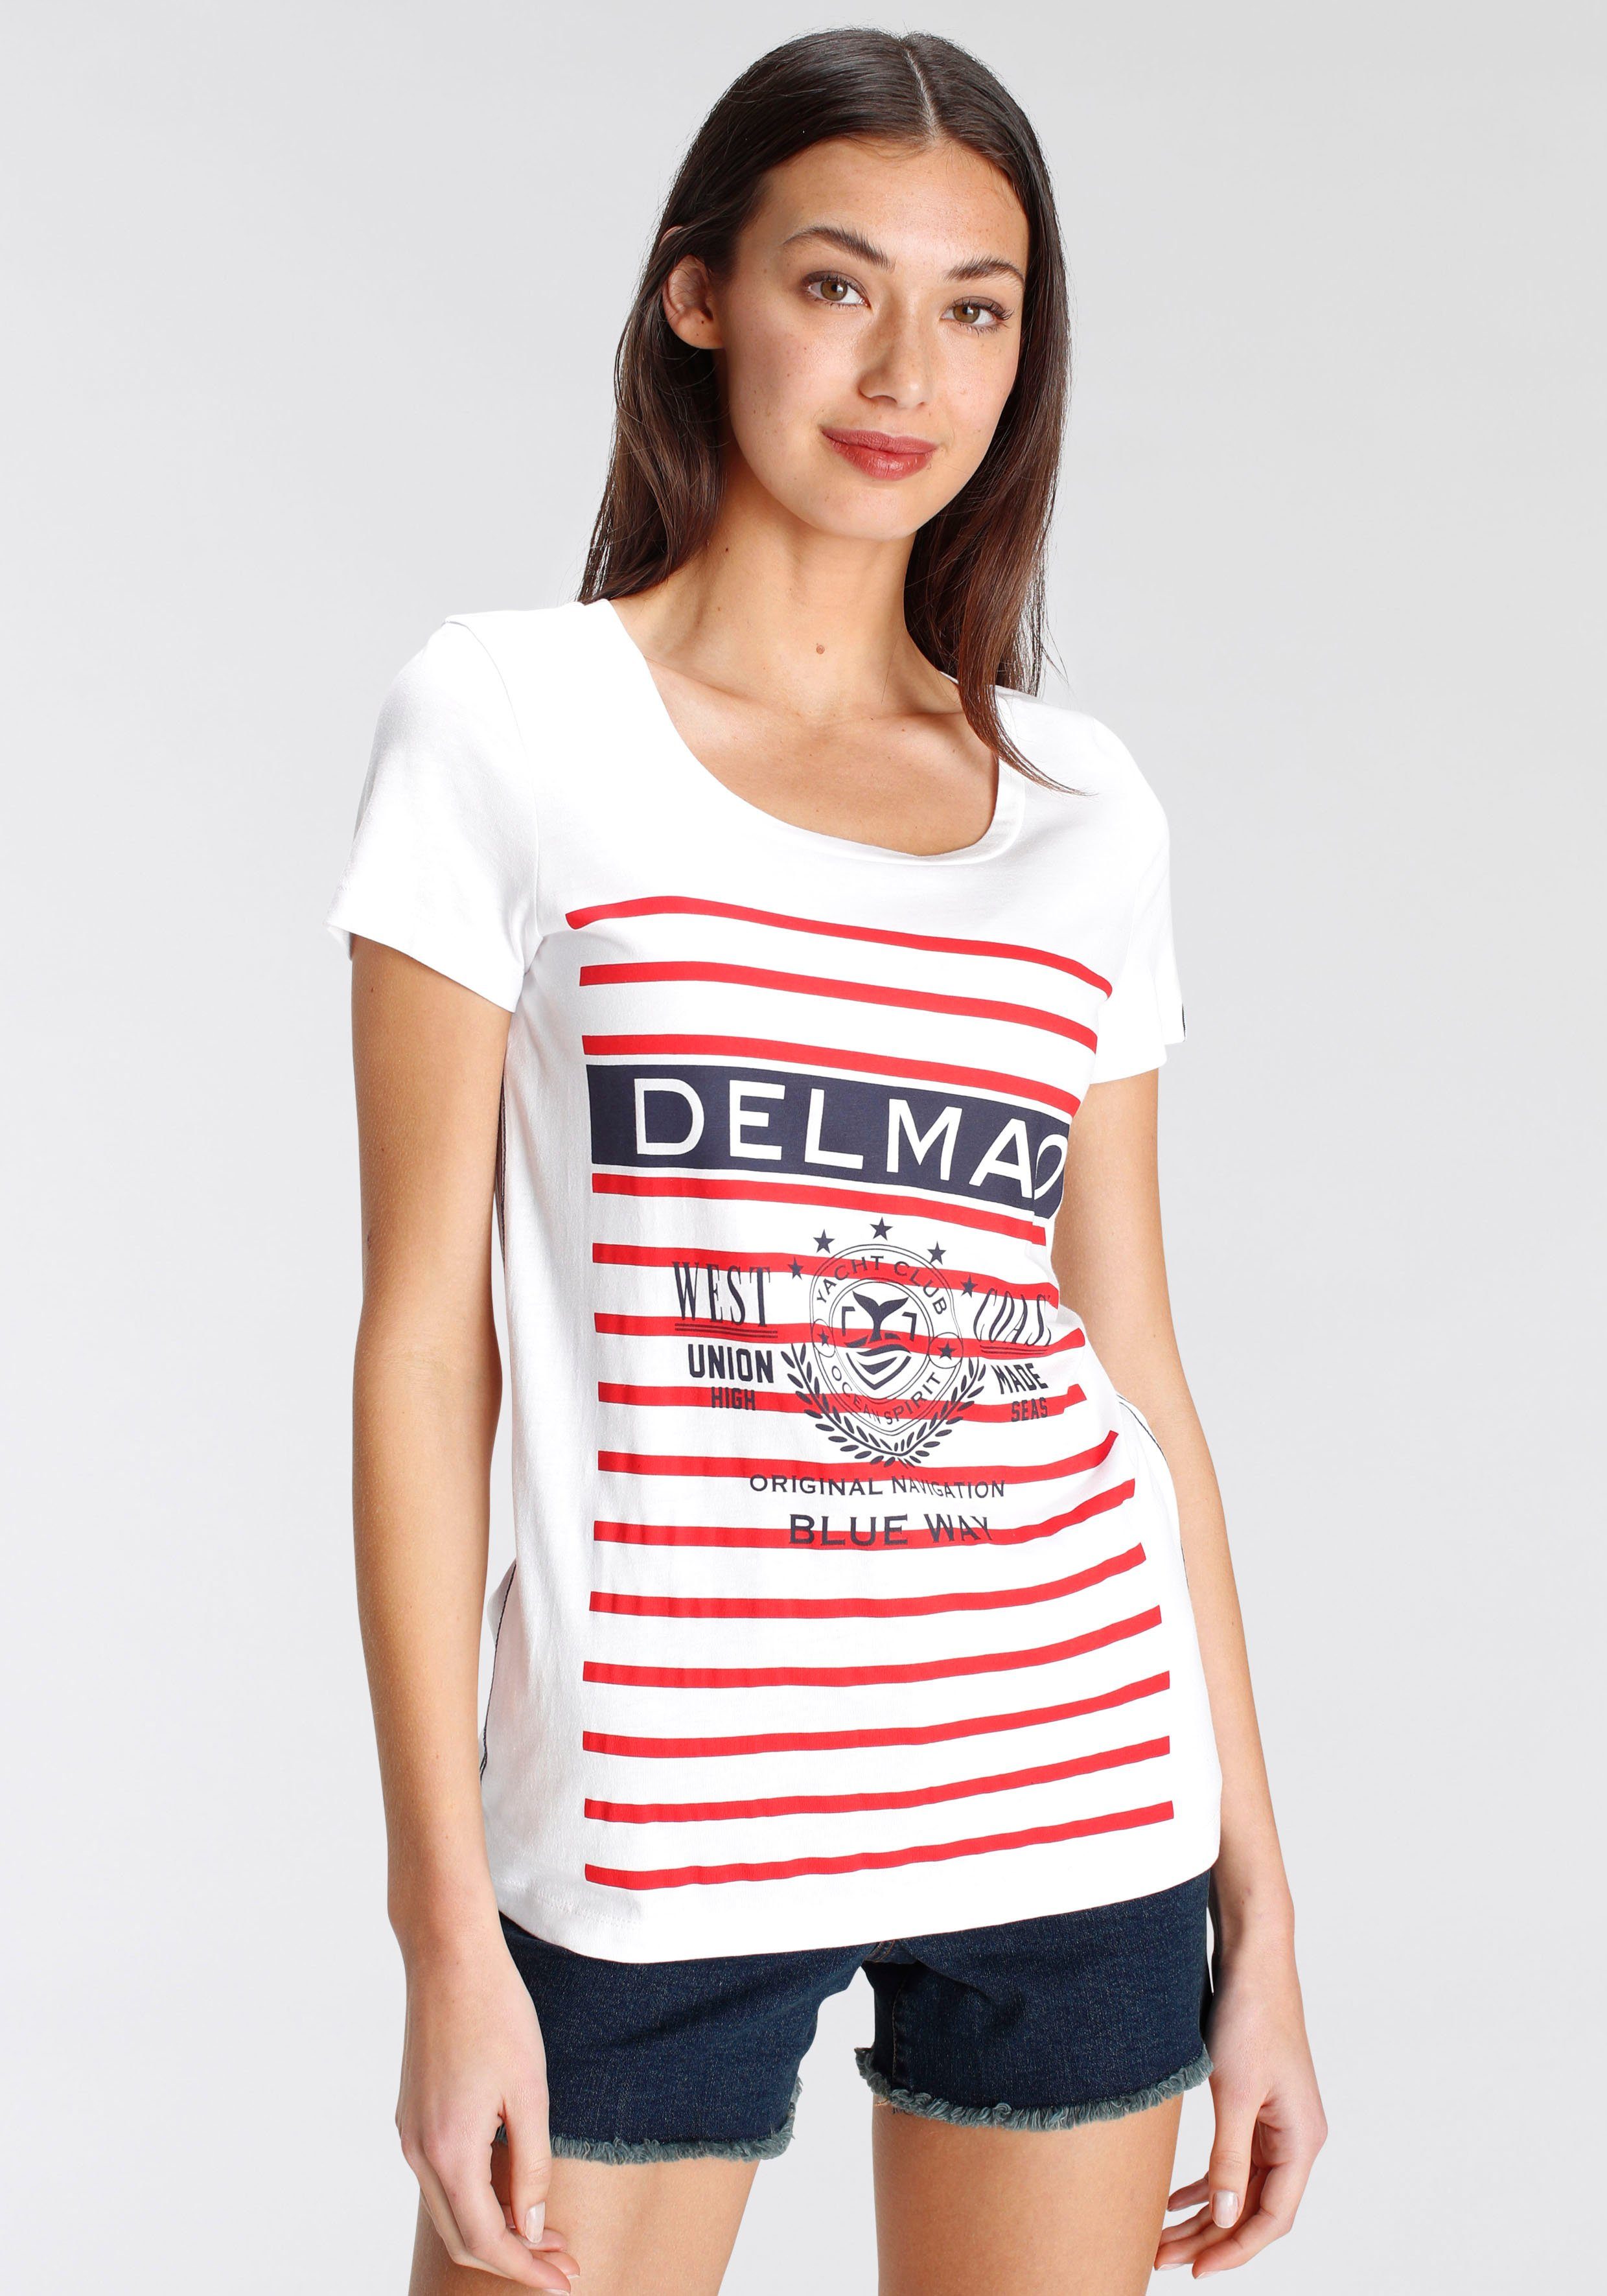 DELMAO Print-Shirt mit sportivem großen MARKE! Marken-Logodruck - NEUE